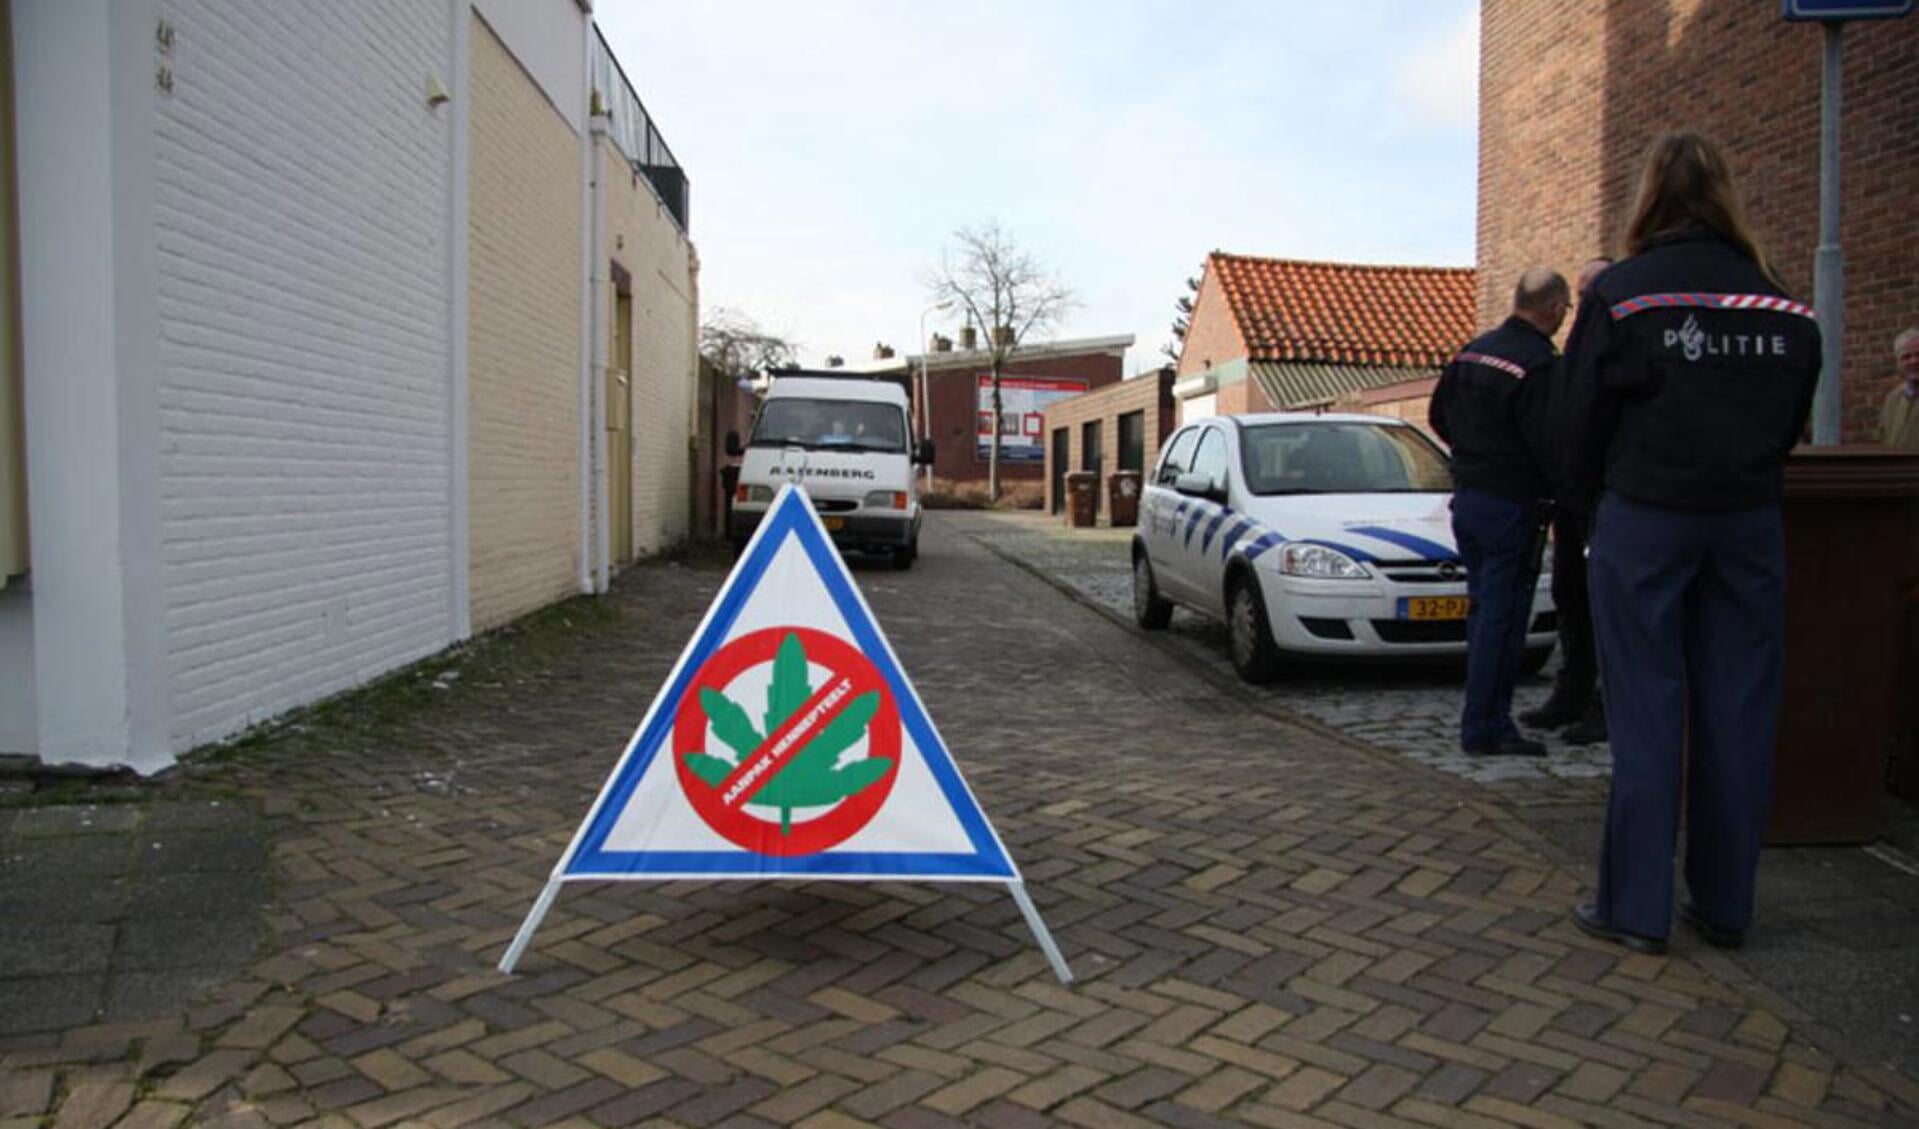 De politie viel meerdere Bredase panden binnen tijdens een Brabantse hennepruimdag. foto Erik Eggens